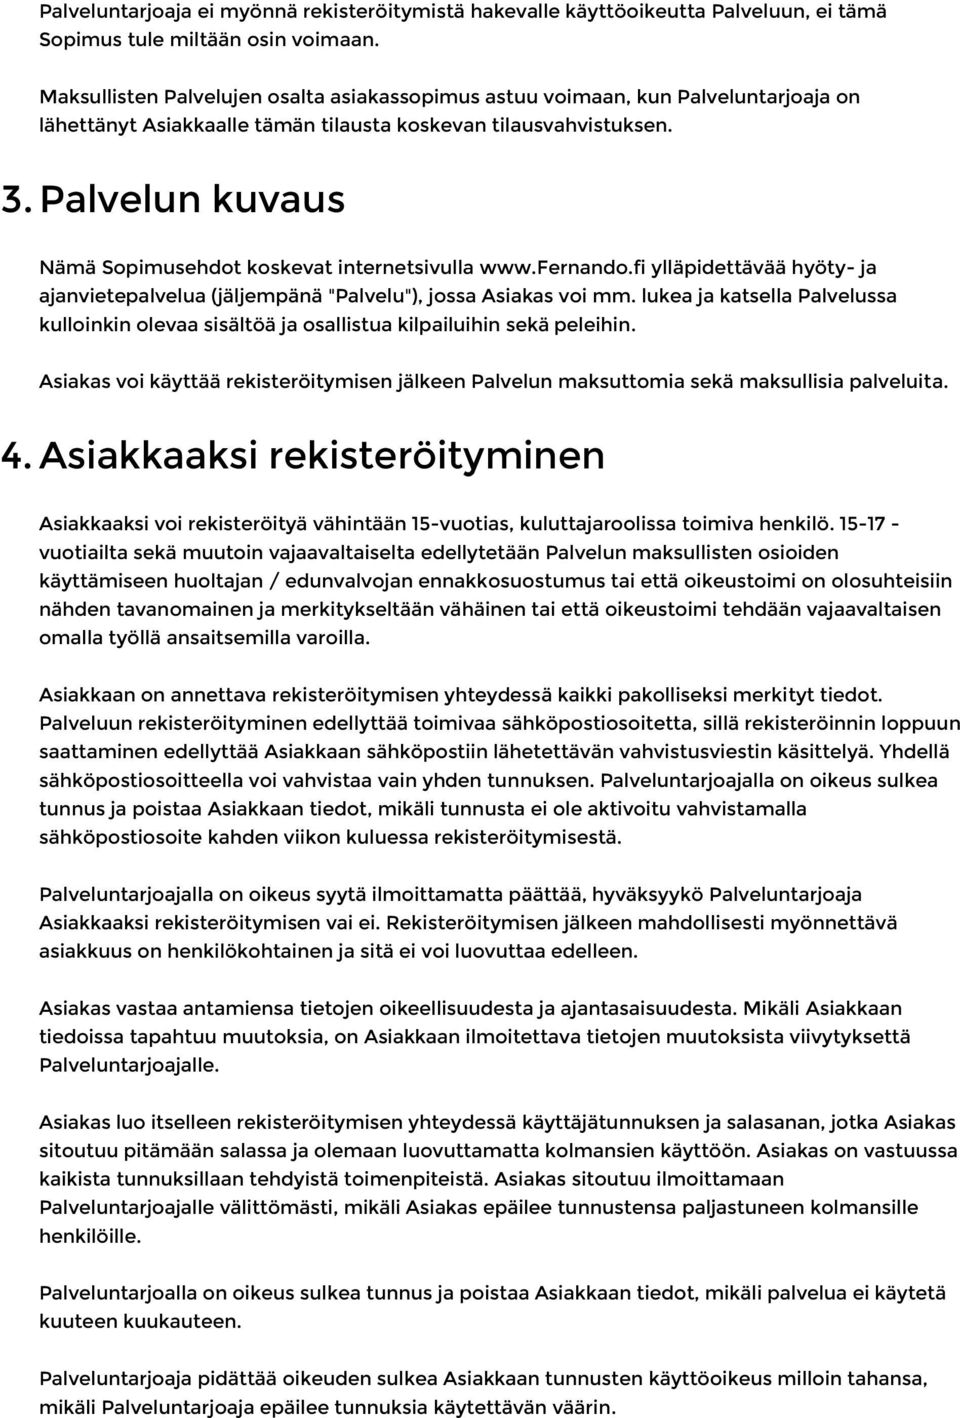 Palvelun kuvaus Nämä Sopimusehdot koskevat internetsivulla www.fernando.fi ylläpidettävää hyöty- ja ajanvietepalvelua (jäljempänä "Palvelu"), jossa Asiakas voi mm.